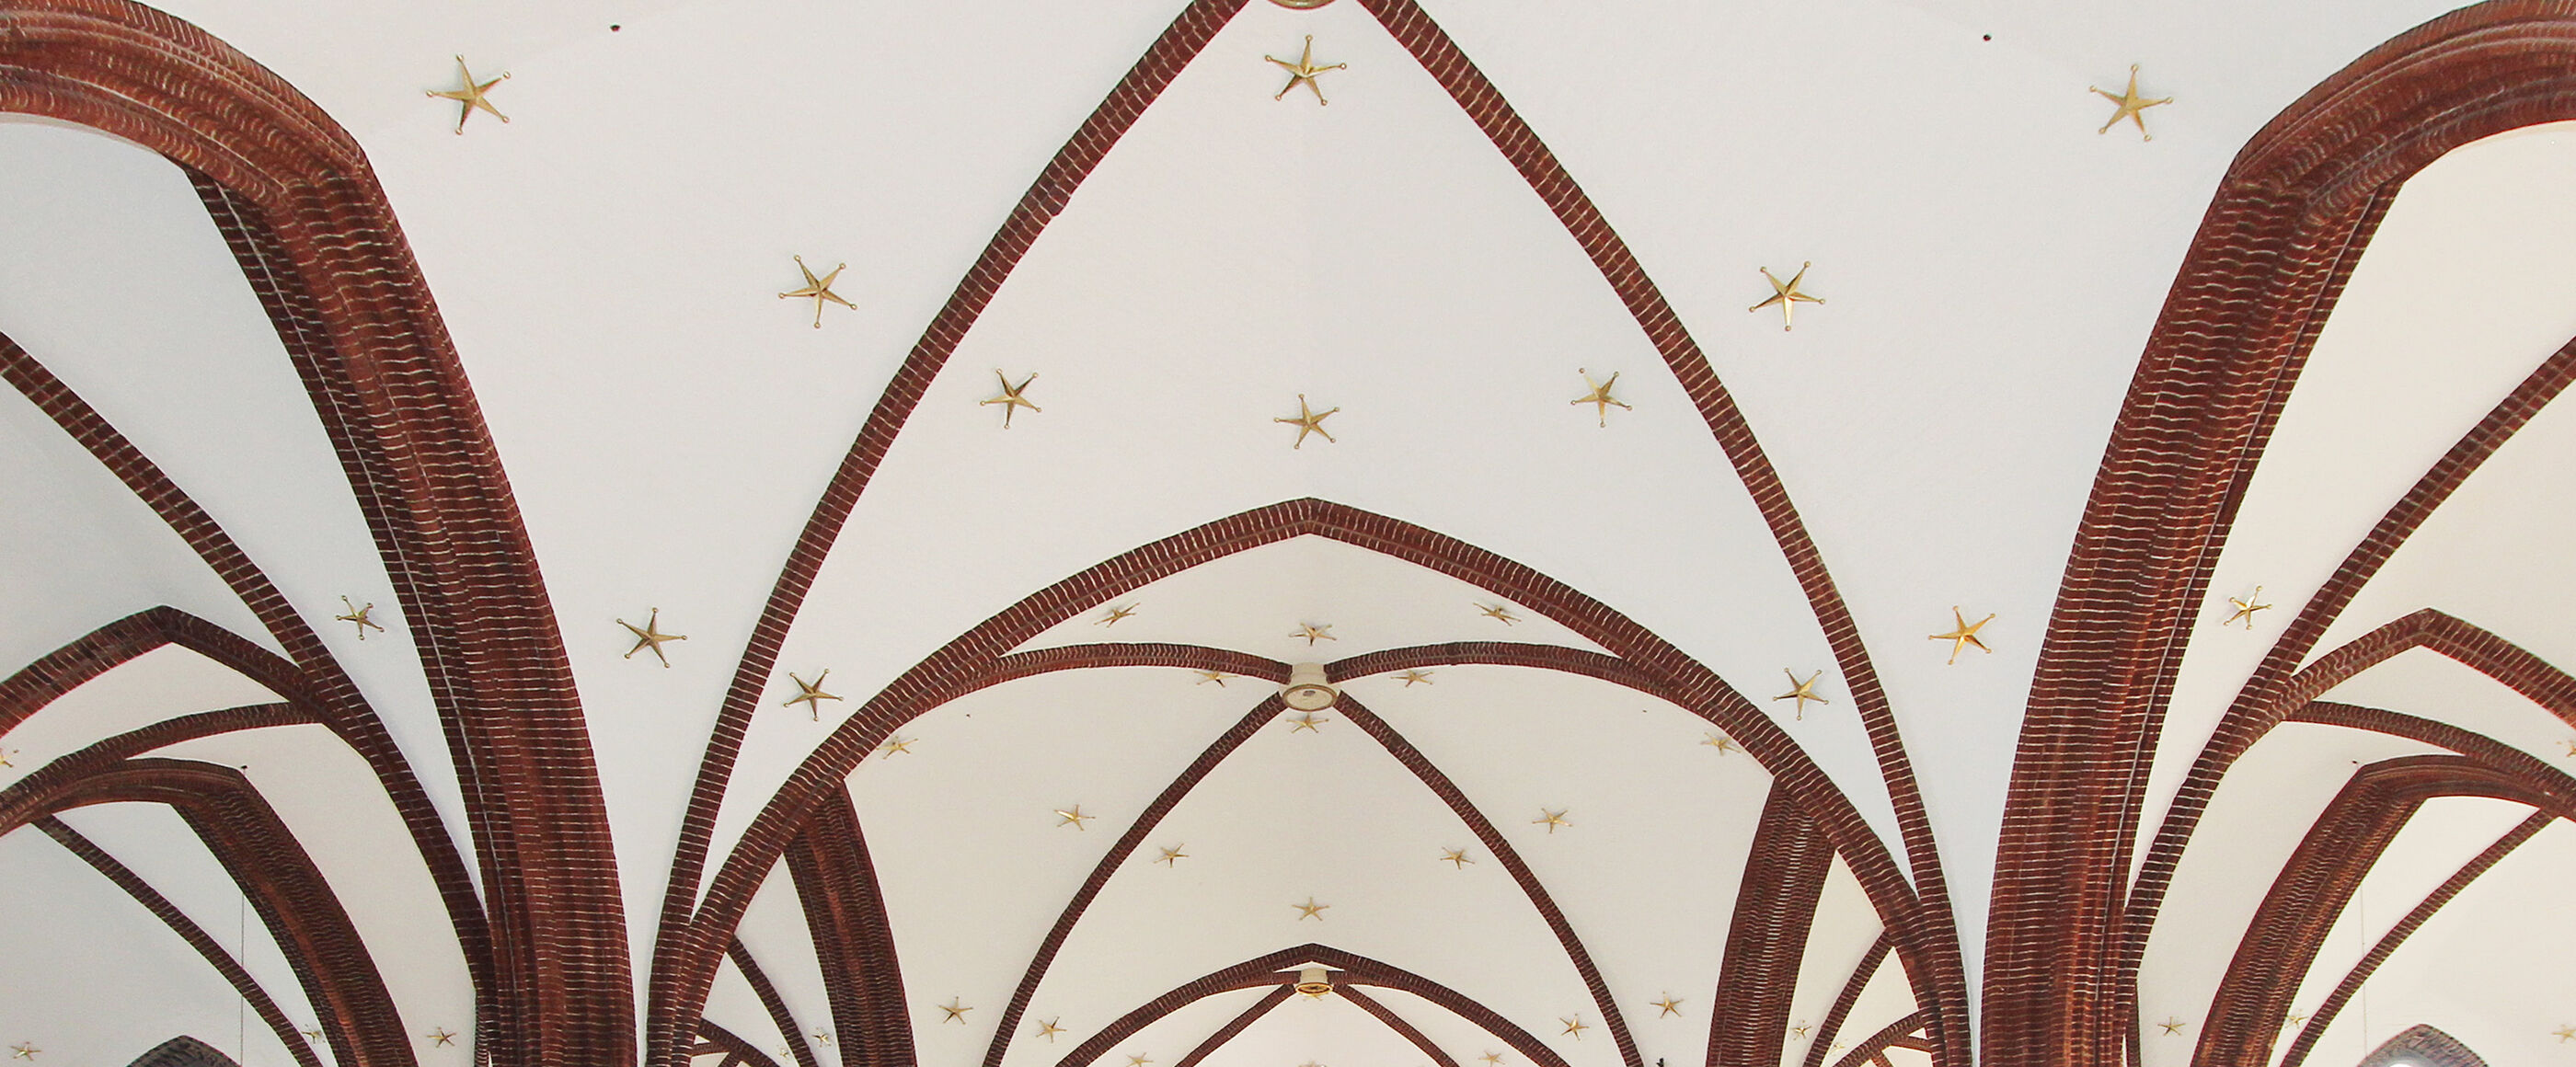 Eine mit Sternen verzierte Gewölbedecke in einer Kirche.